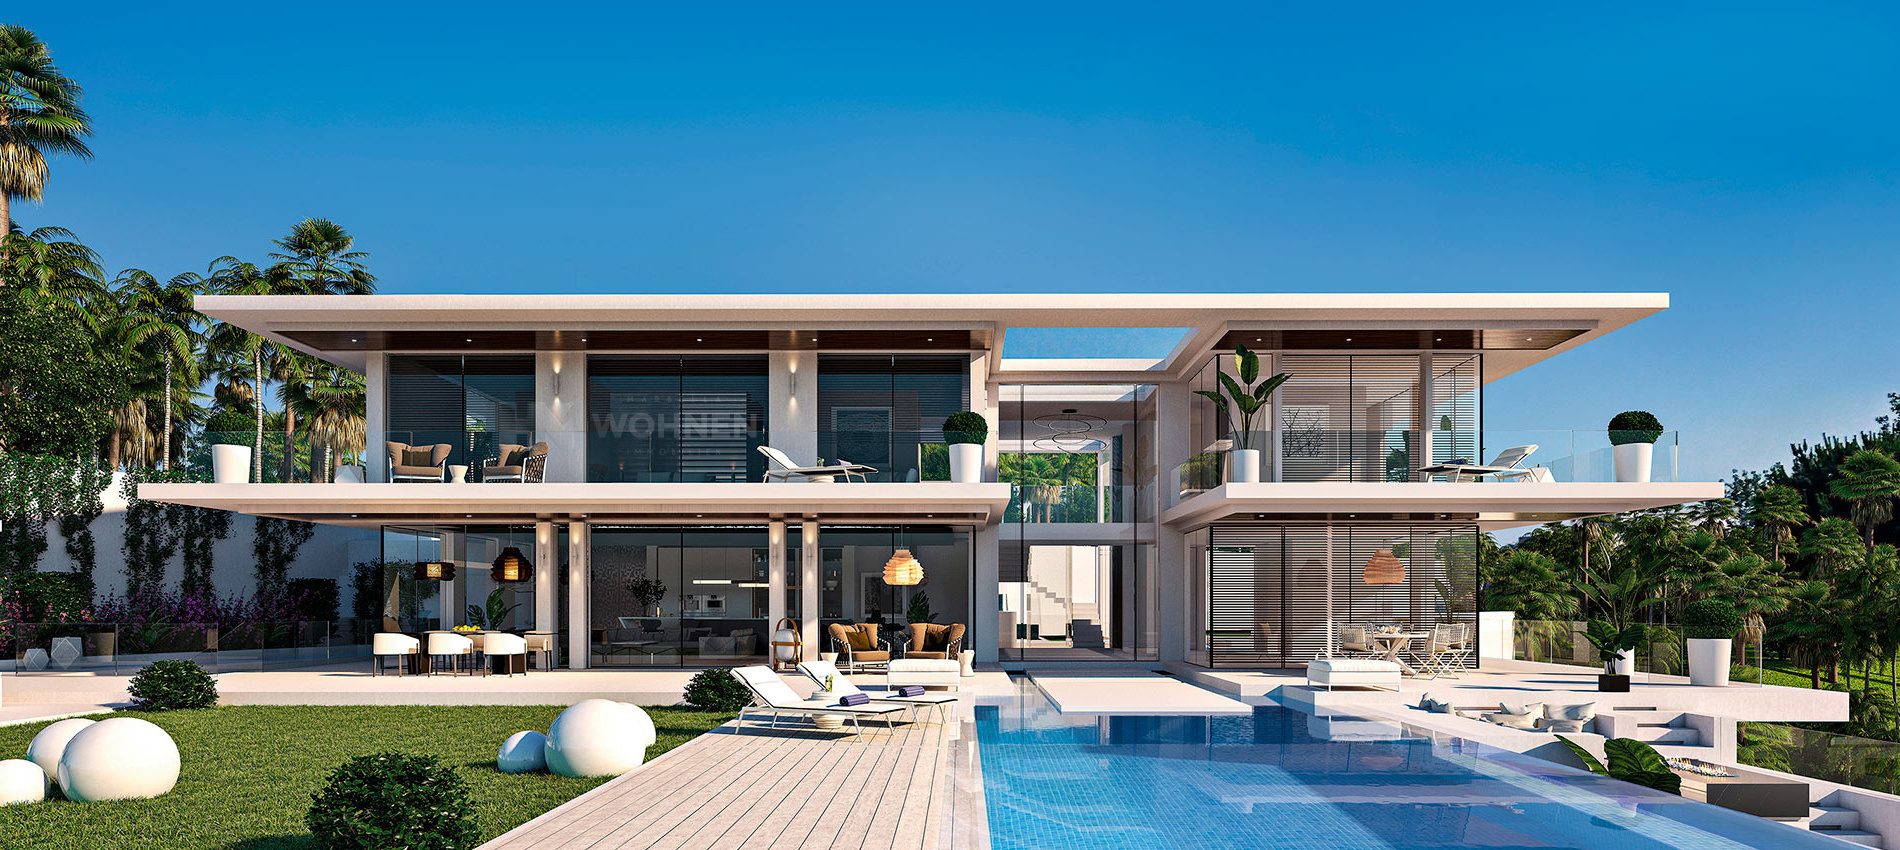 Moderne Villa im neuen kalifornischen Stil